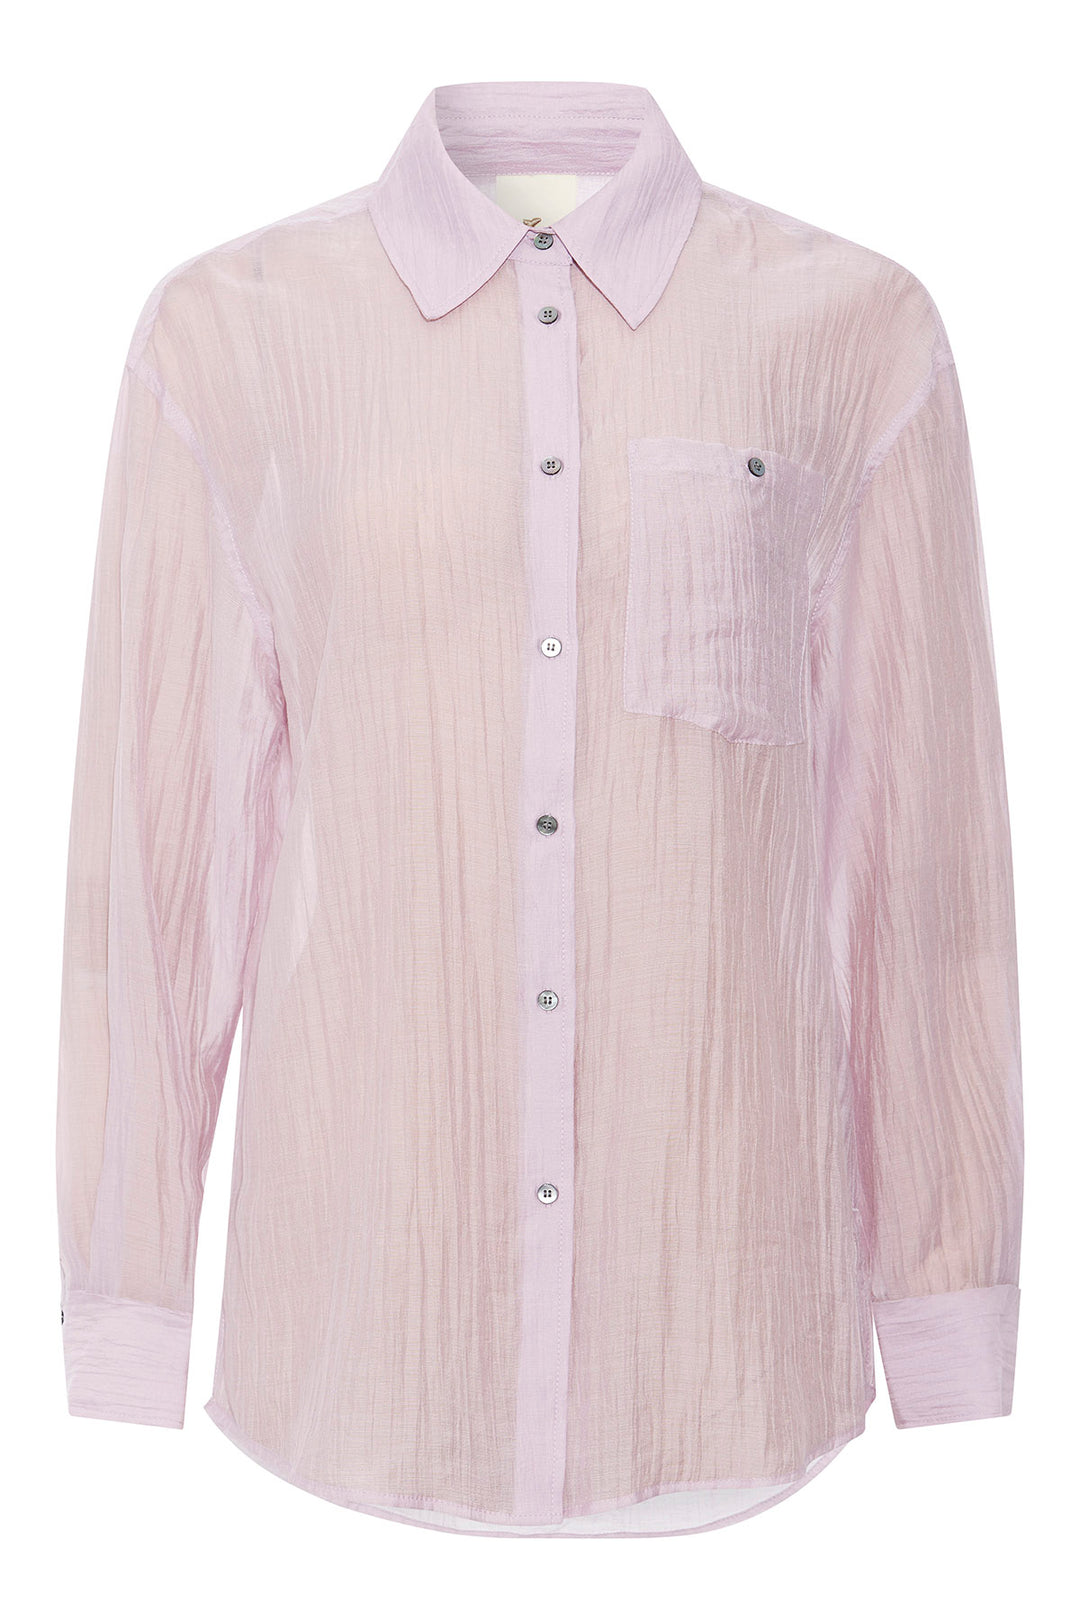 Heartmade Mekan shirt HM SHIRTS 126 Misty rose